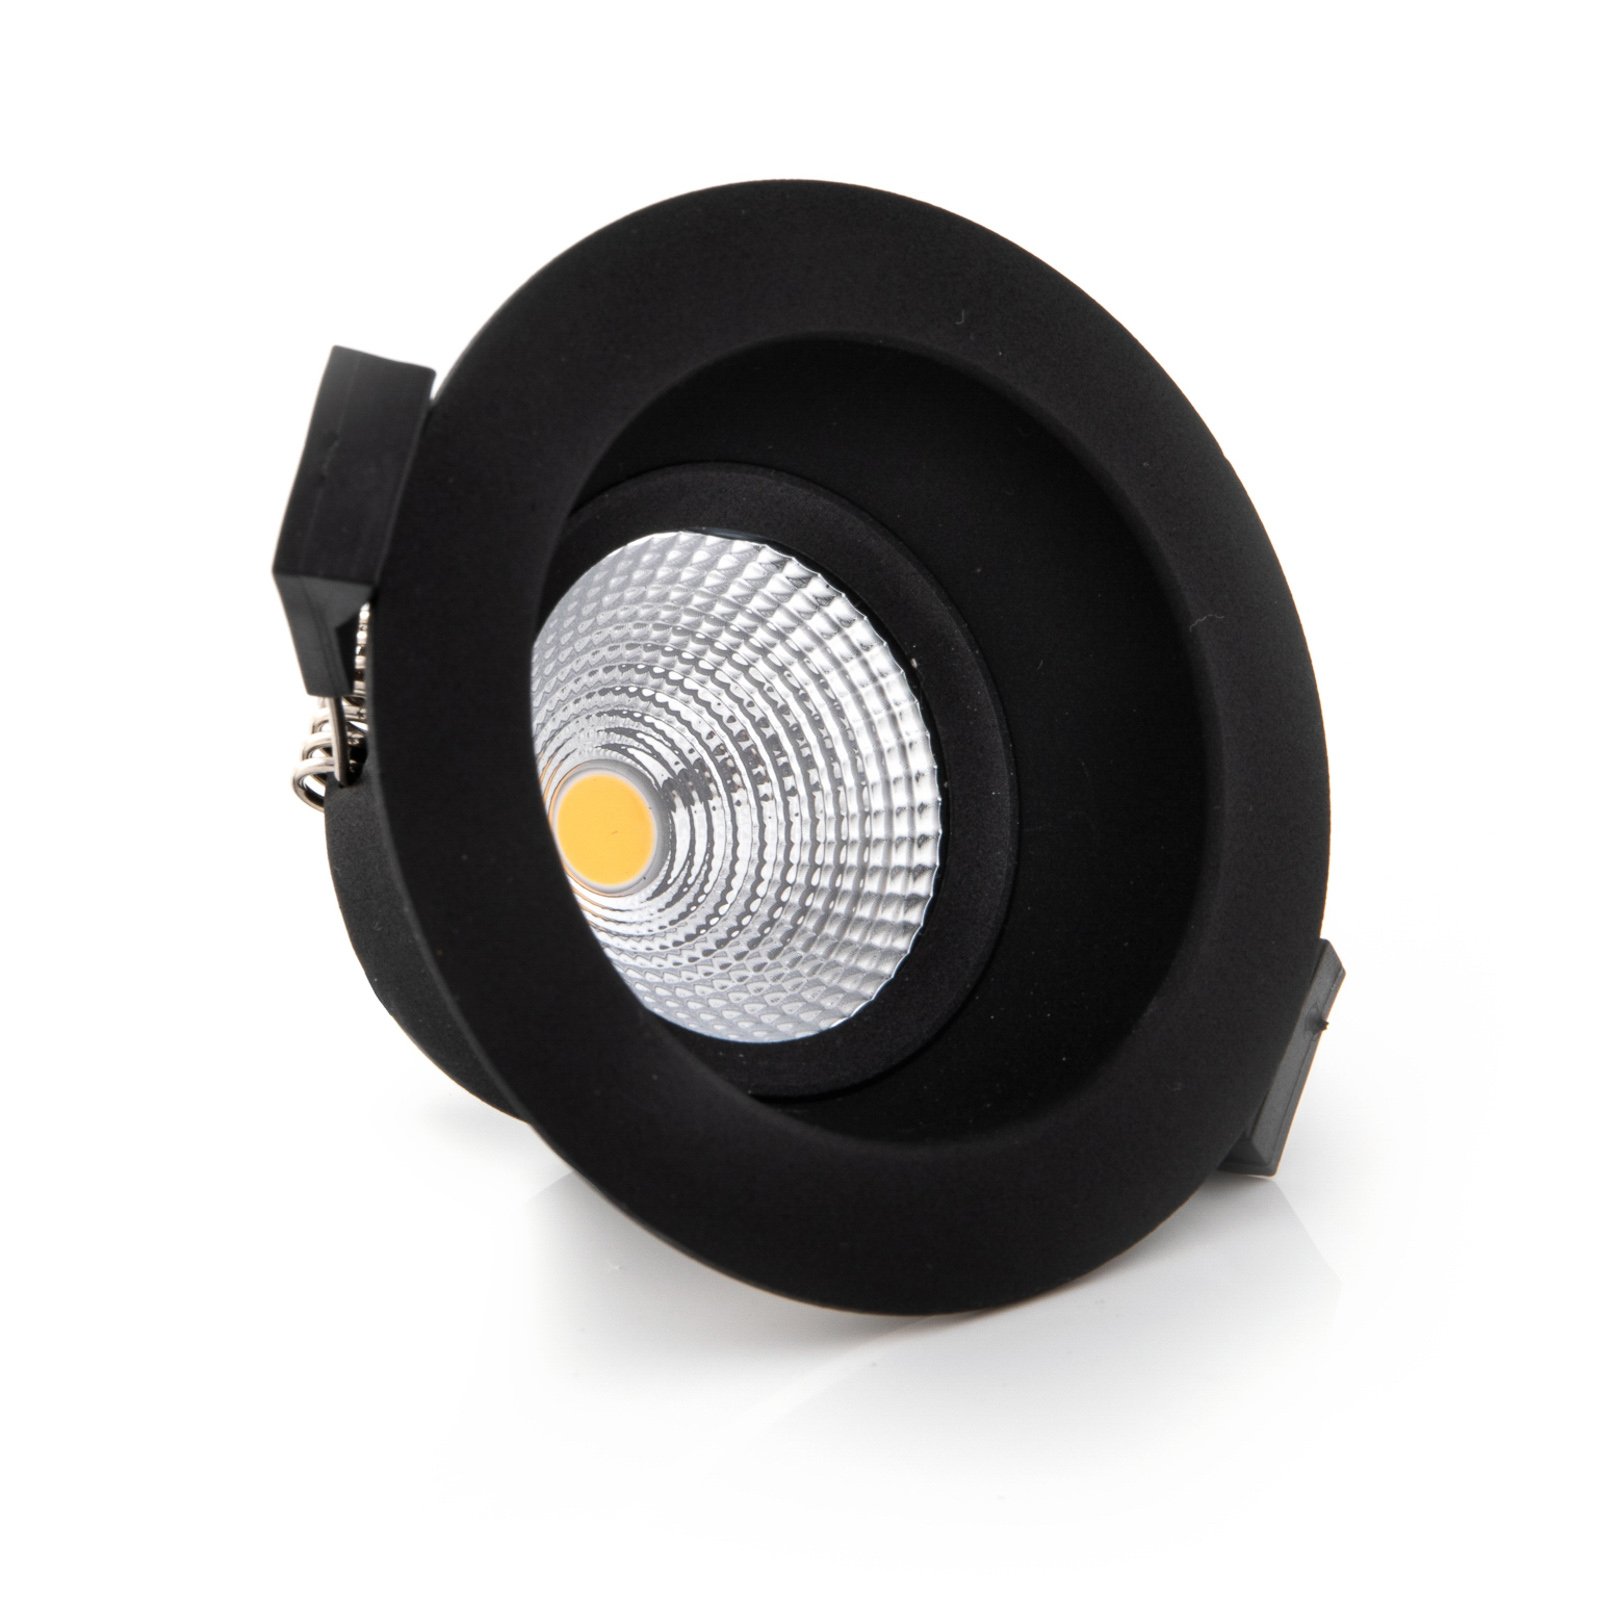 SLC One Soft LED за вграждане, затъмнен до топъл черен цвят